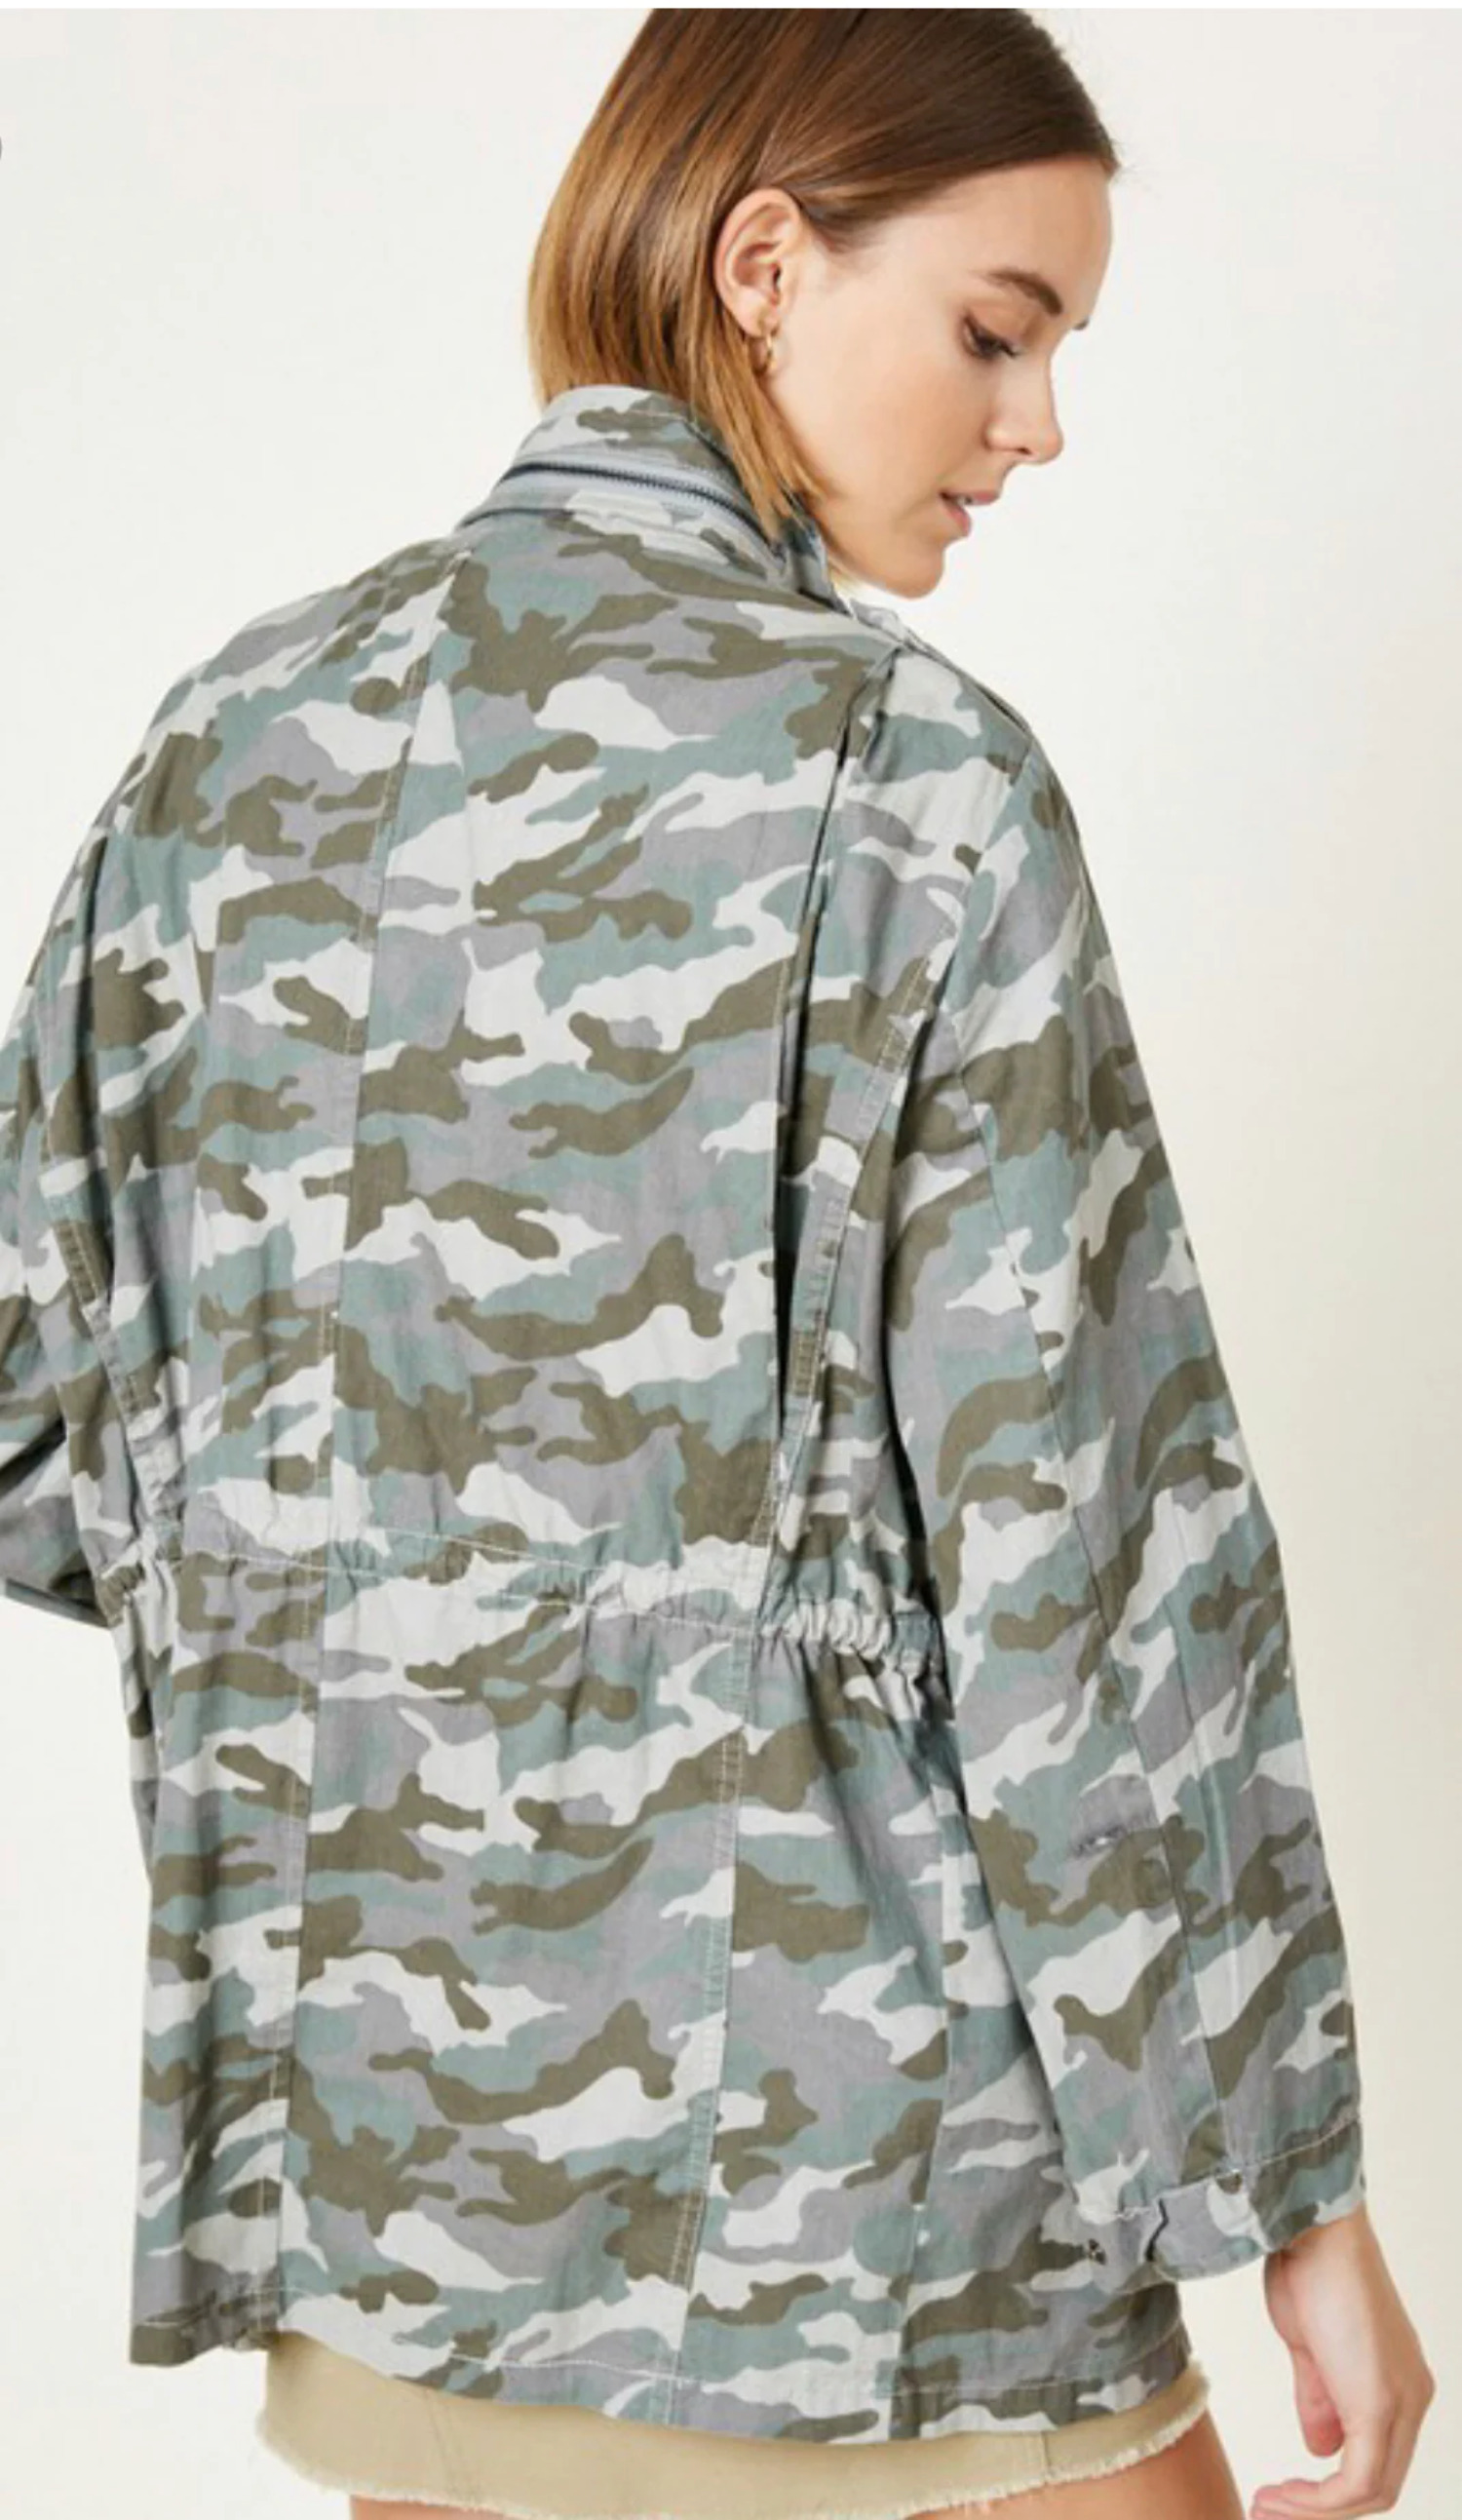 Women's Camouflage Jacket - image 2 of 5